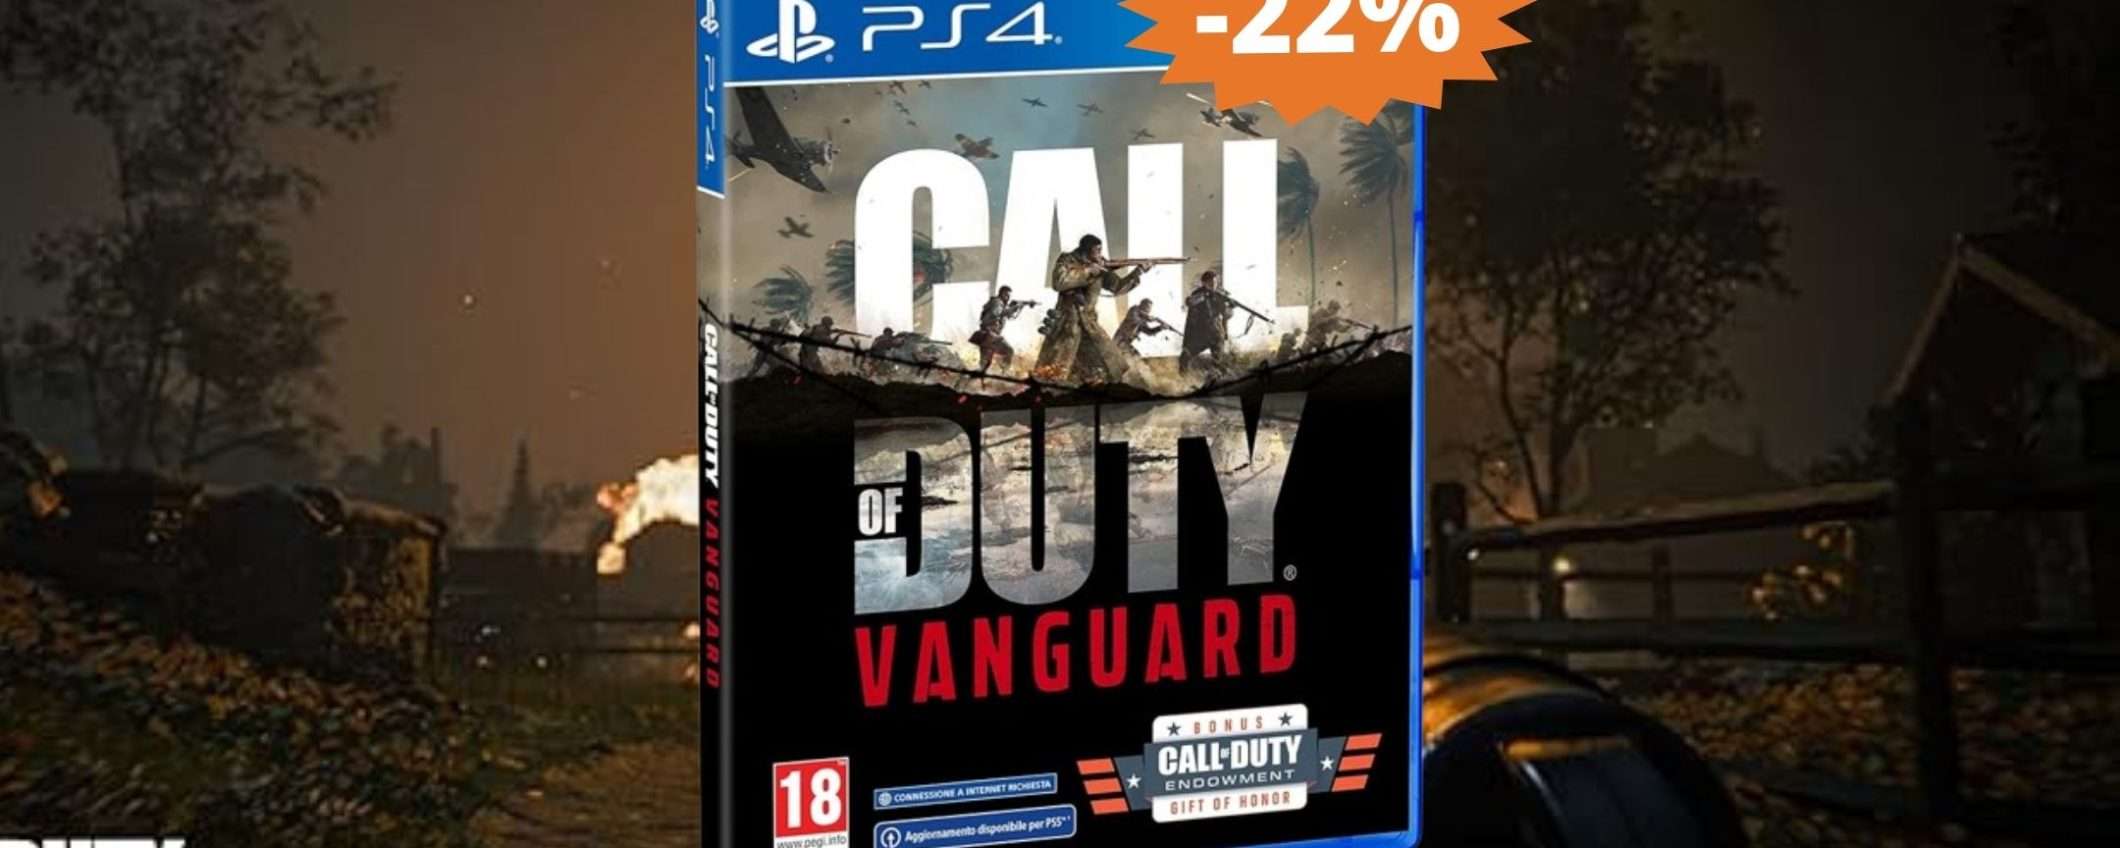 Call of Duty Vanguard per PS4: sconto ESCLUSIVO del 22%